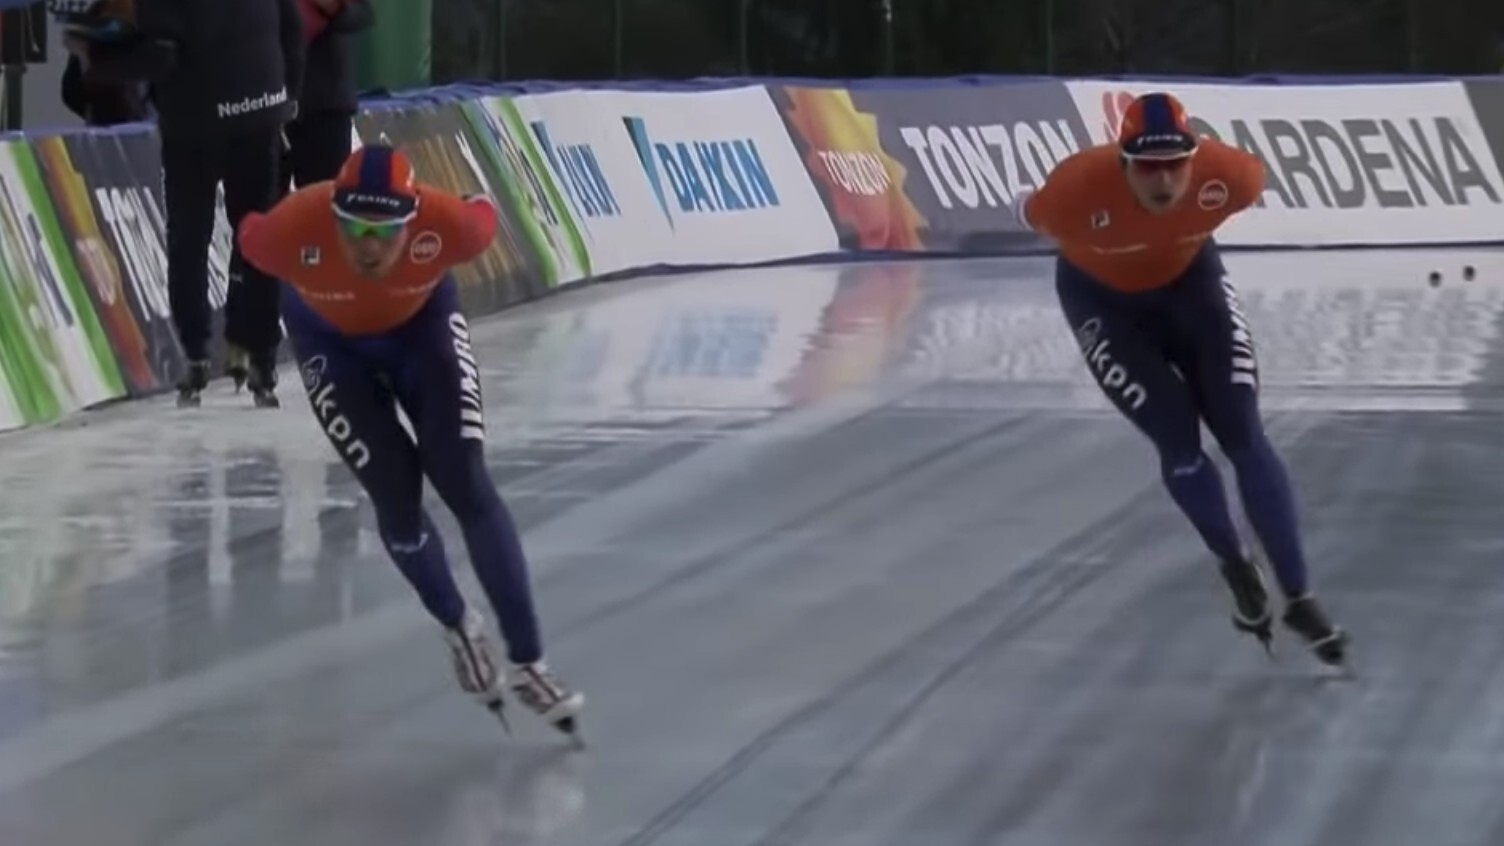 Koken Isoleren Tegen de wil Live stream 10.000 meter mannen schaatsen (Olympische Spelen)